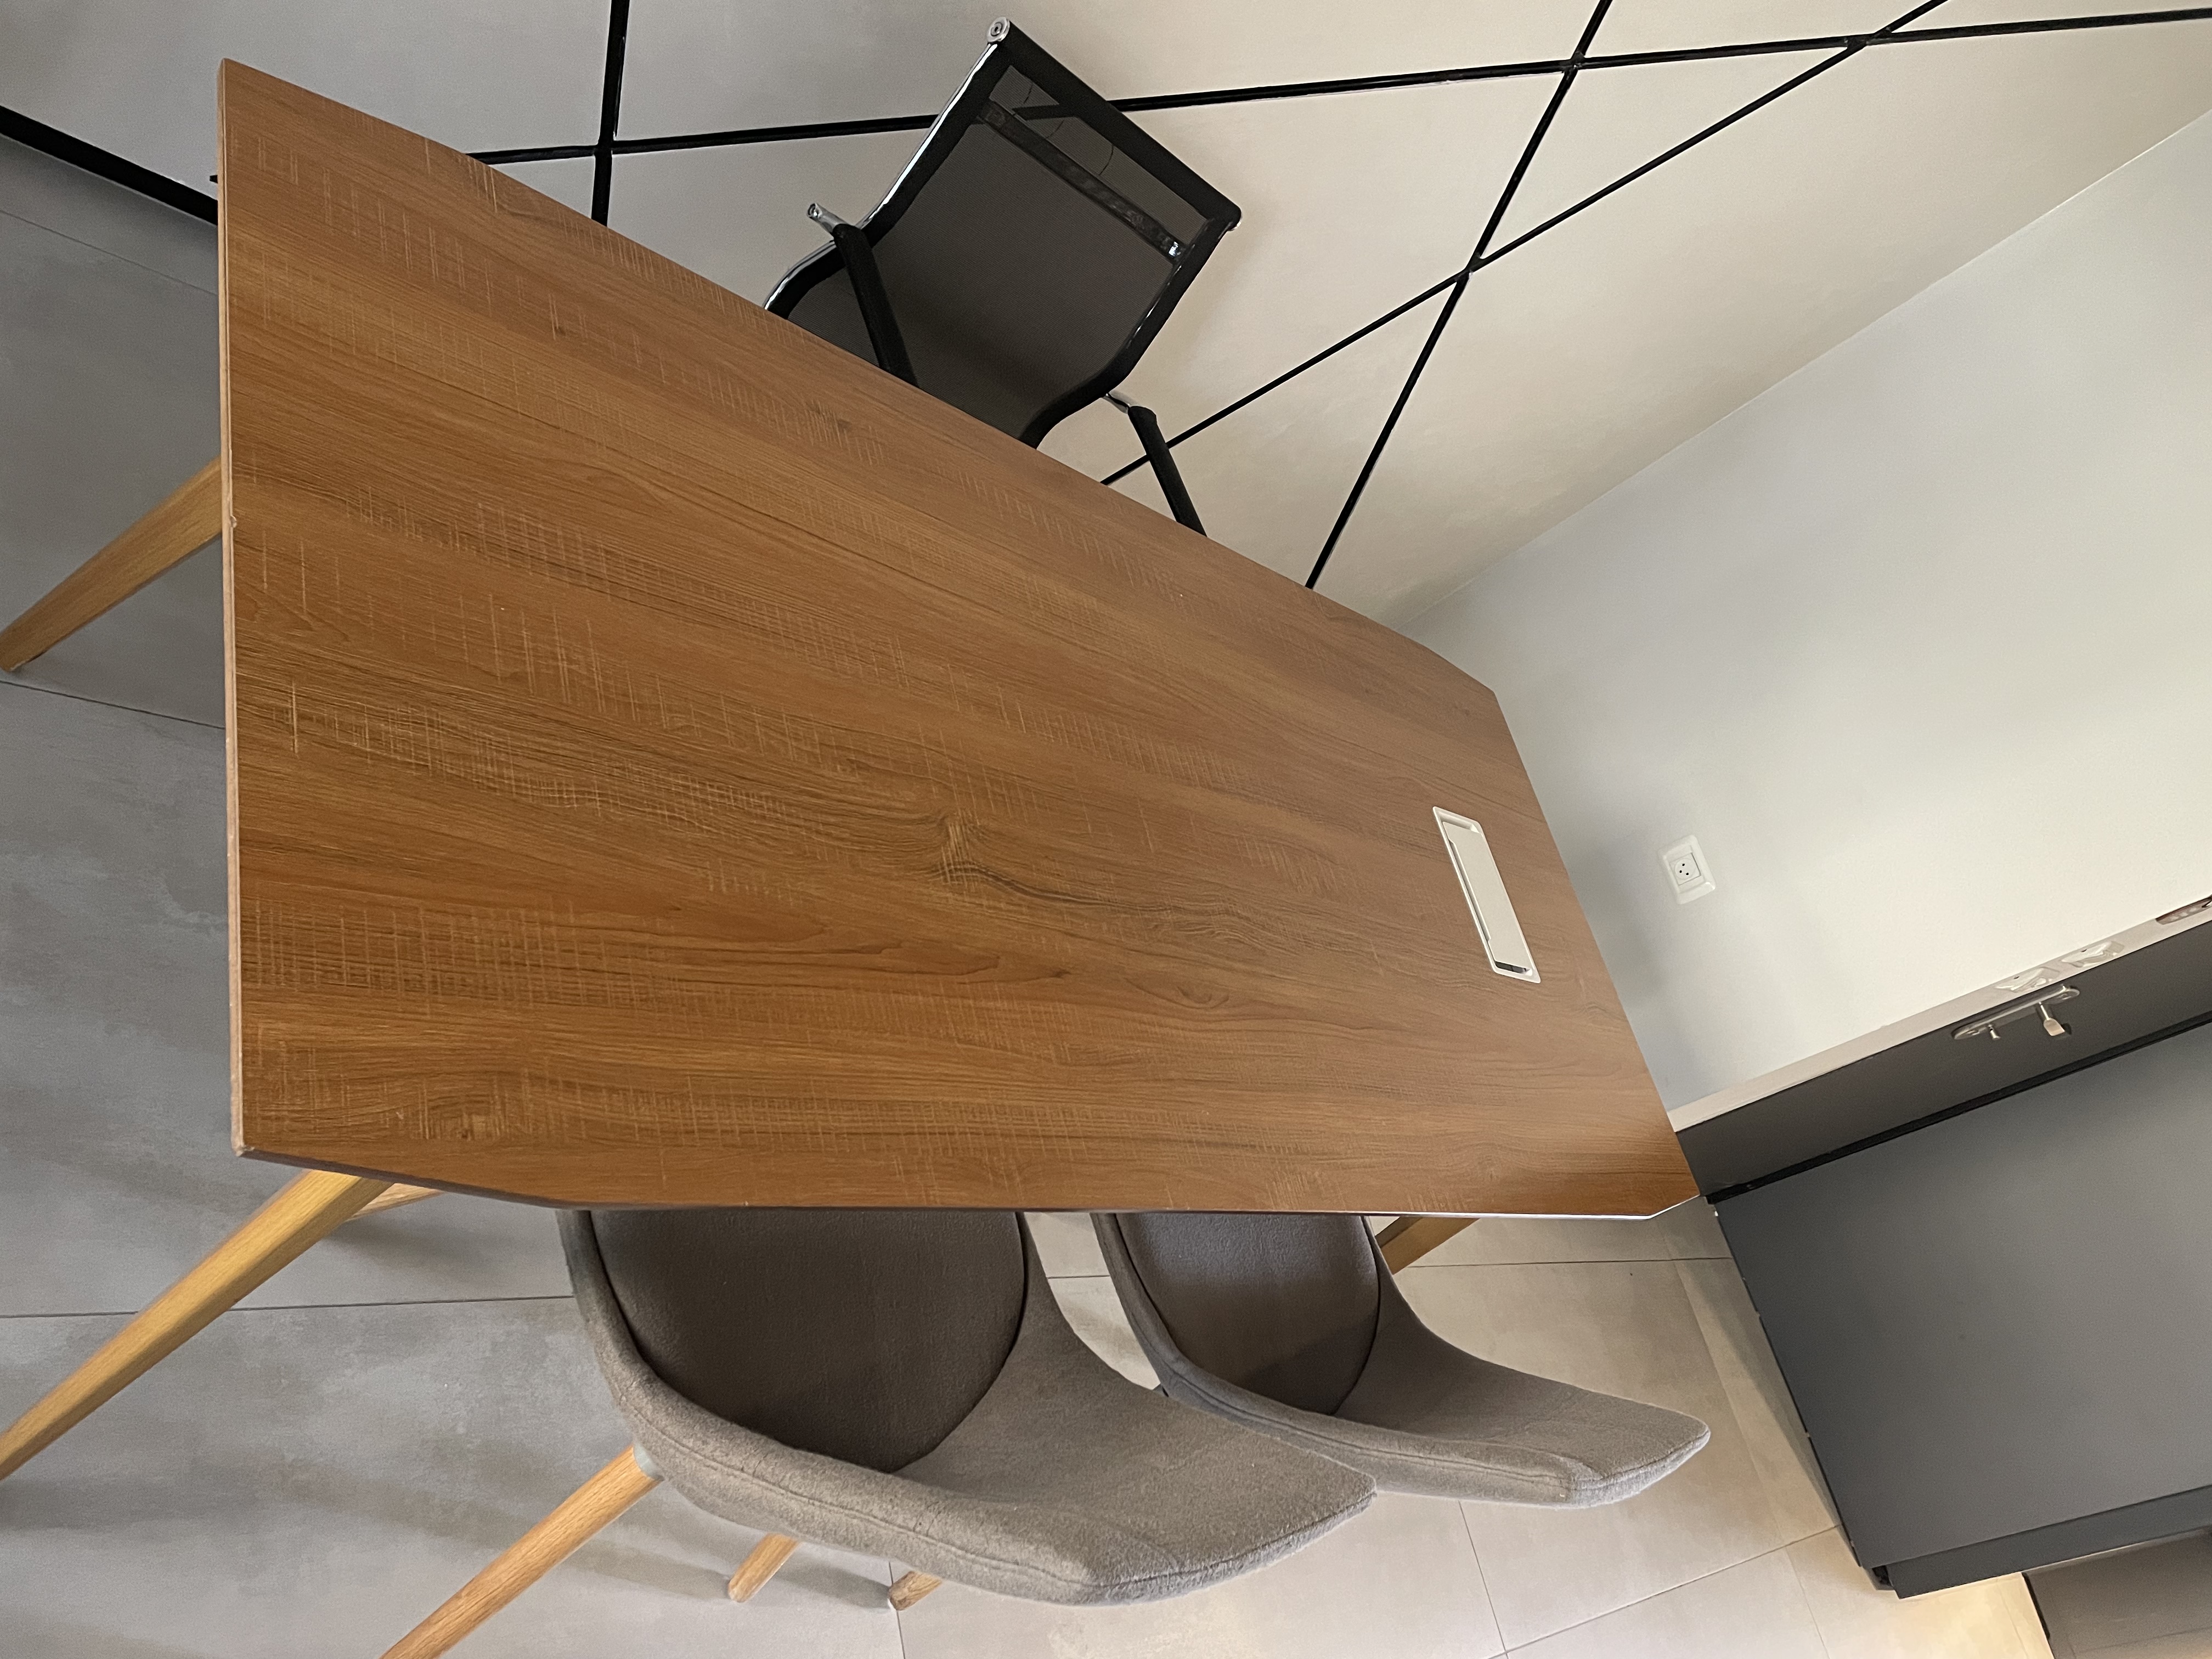 תמונה 1 ,שולחן משרדי למכירה בלוד ציוד משרדי  ריהוט משרדי